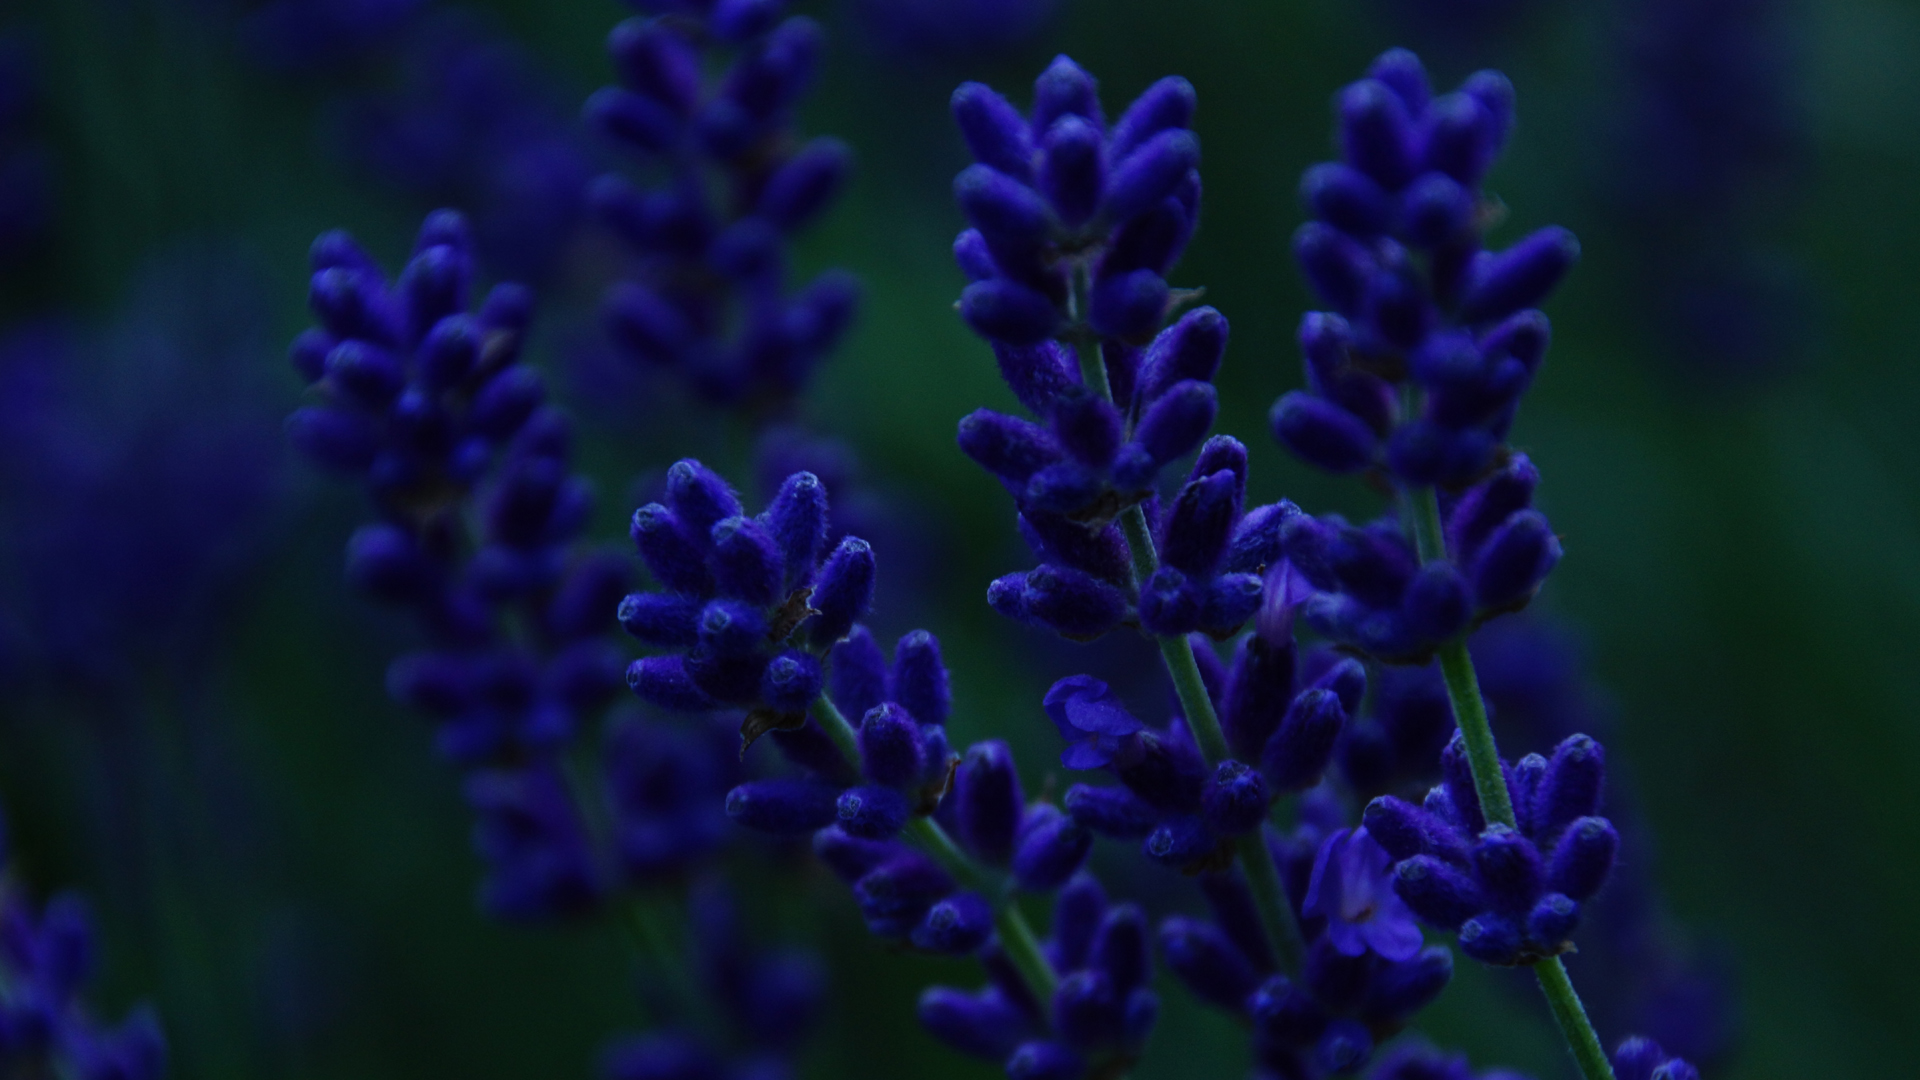 Fotostrecke Blau 06: Lavendel bei Einbruch der Nacht